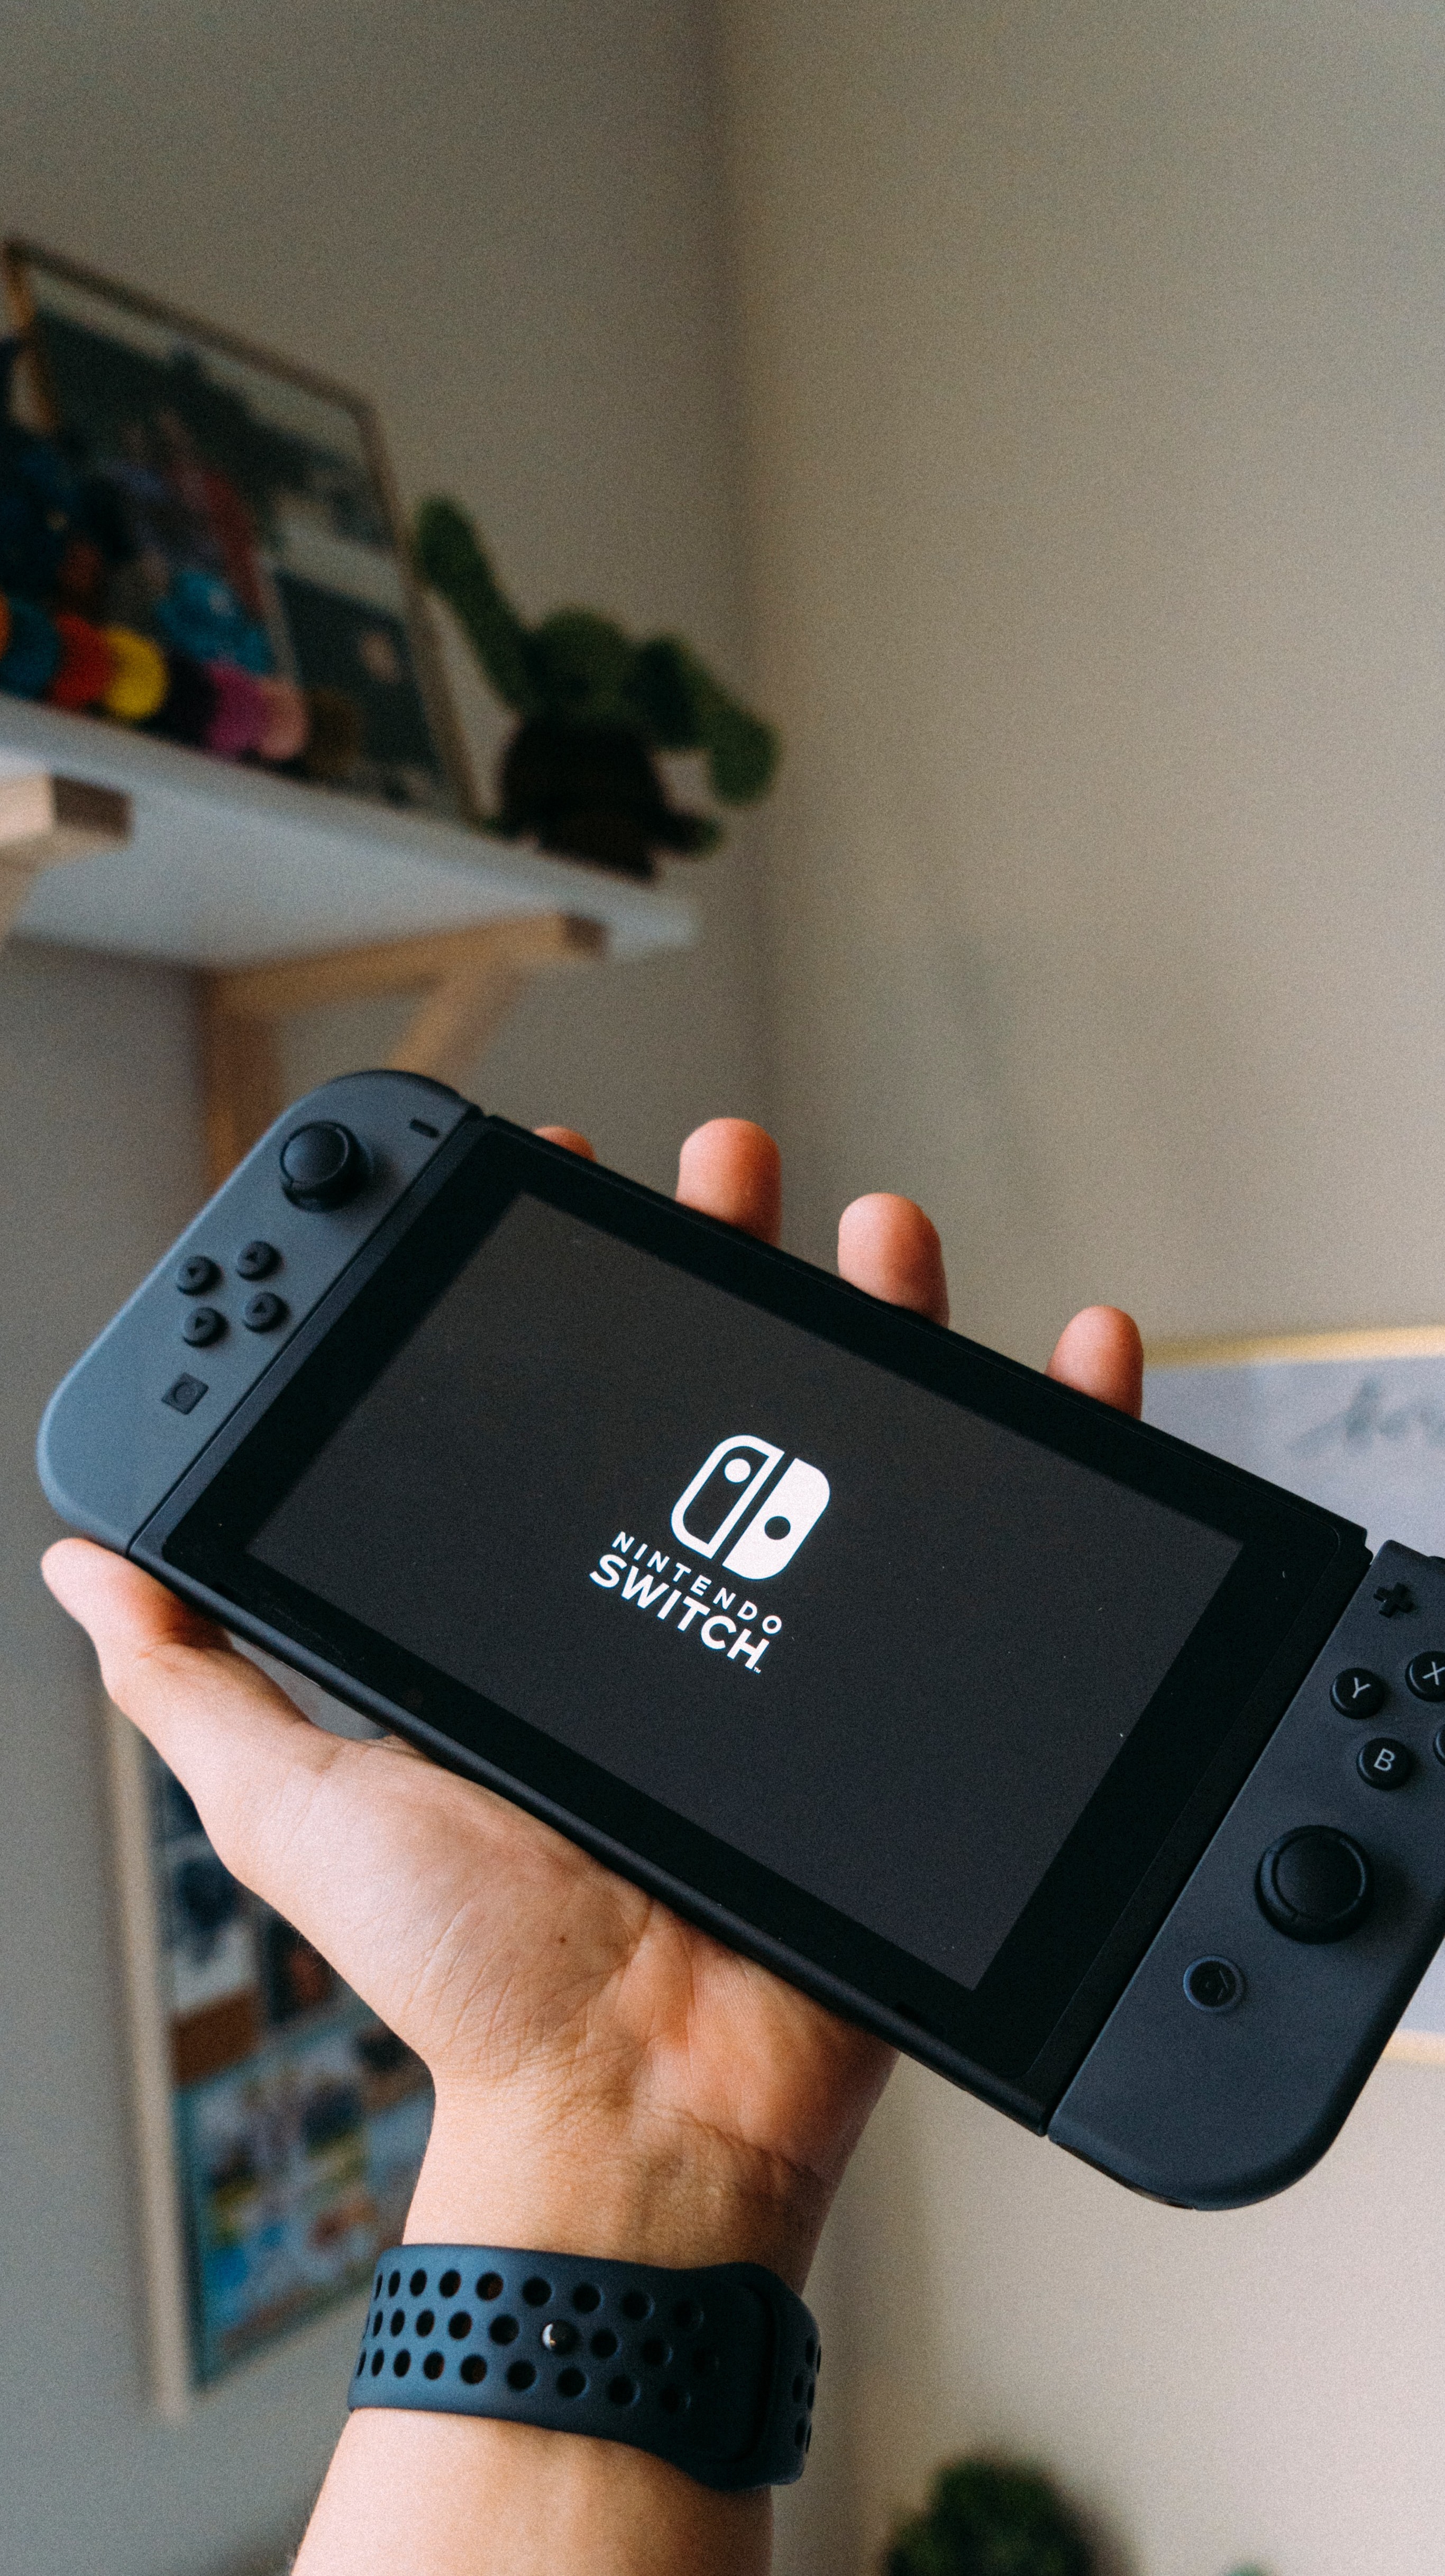 Lista traz jogos que poderiam voltar para o Nintendo Switch